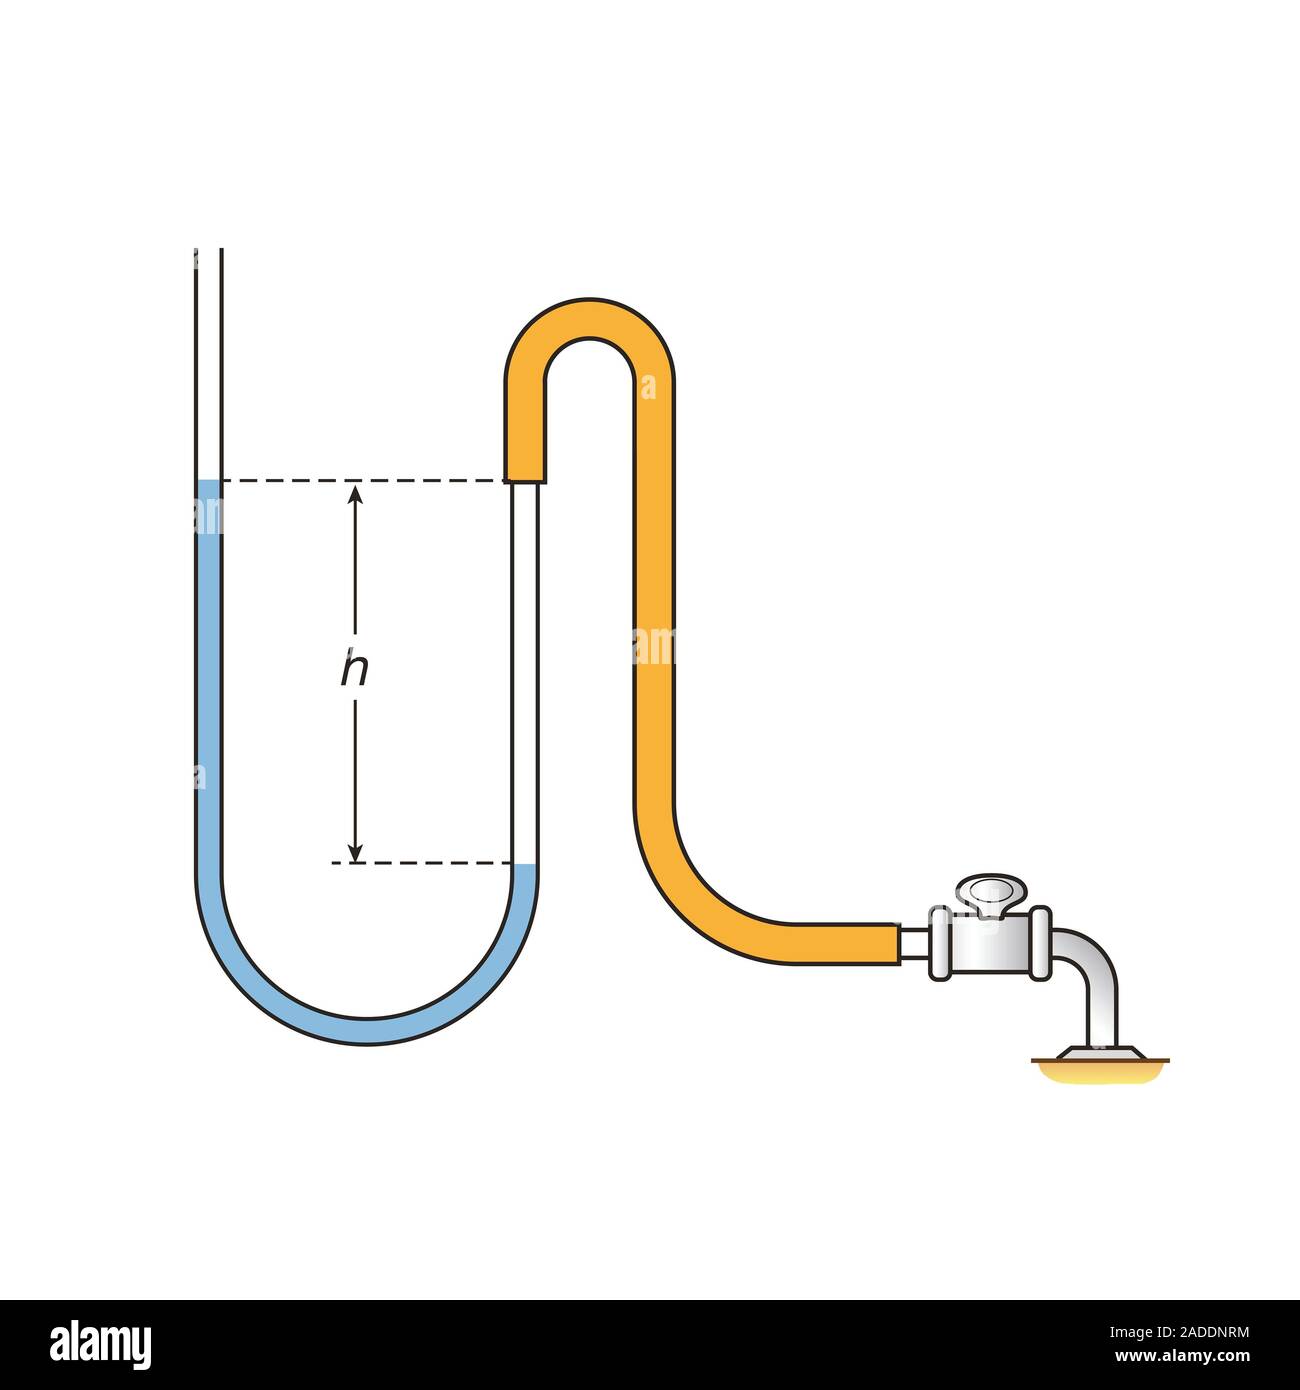 Manómetro. Ilustración mostrando un manómetro de tubo en U de agua  conectado a un suministro de gas (derecha). Un manómetro es un indicador de  presión. La presión del gas fr Fotografía de